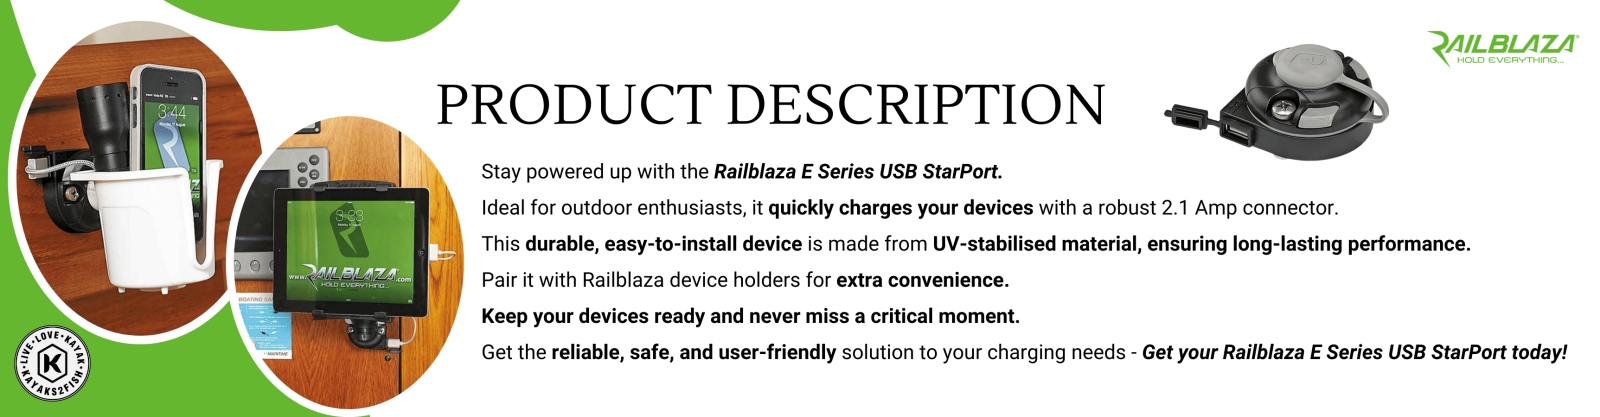 Railblaza E Series USB StarPort